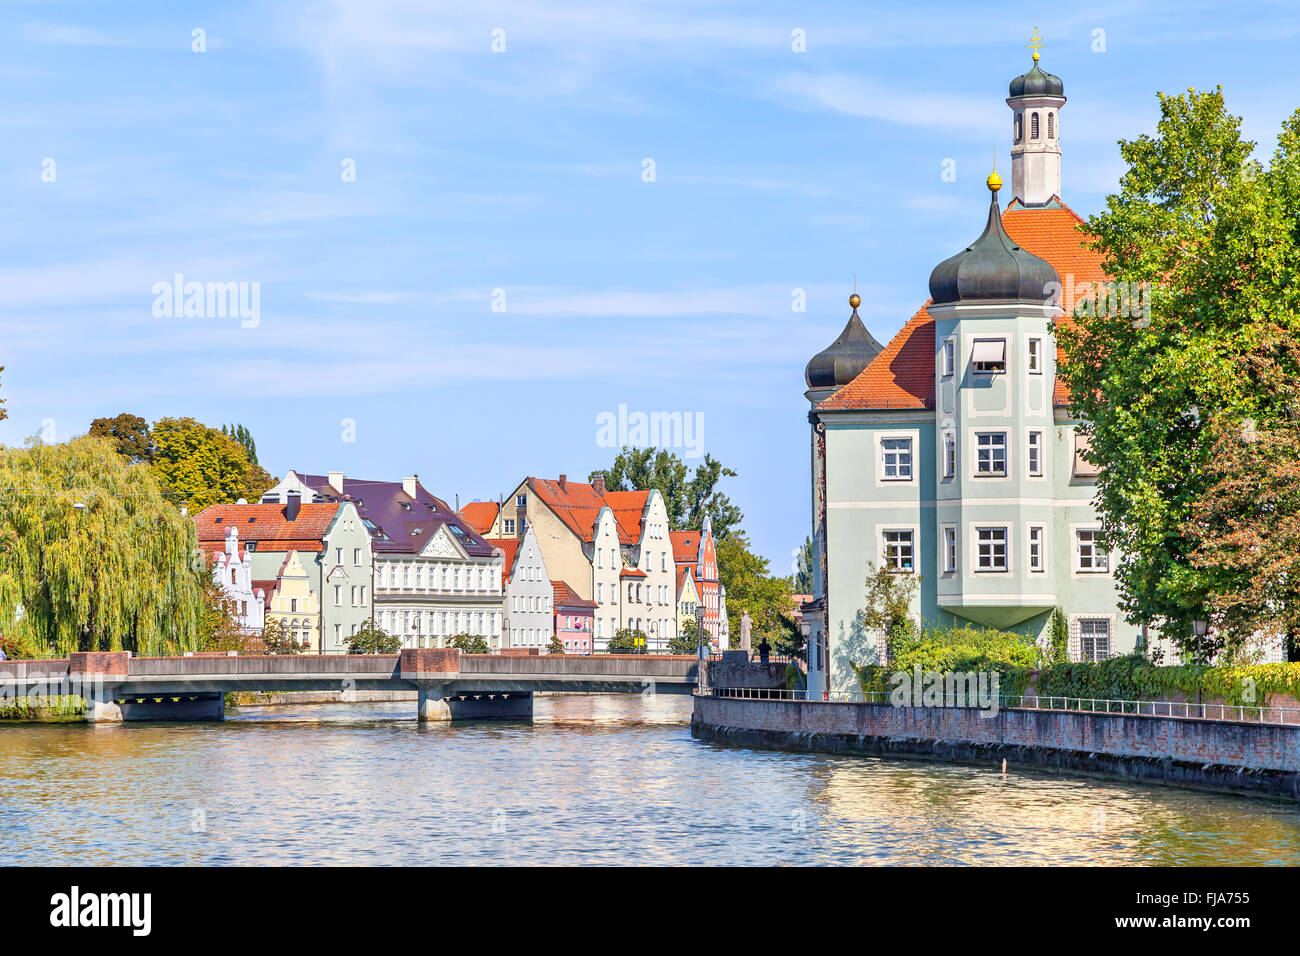 La rivière Isar et bâtiments de style bavarois sur les rives, Landshut, Allemagne Banque D'Images